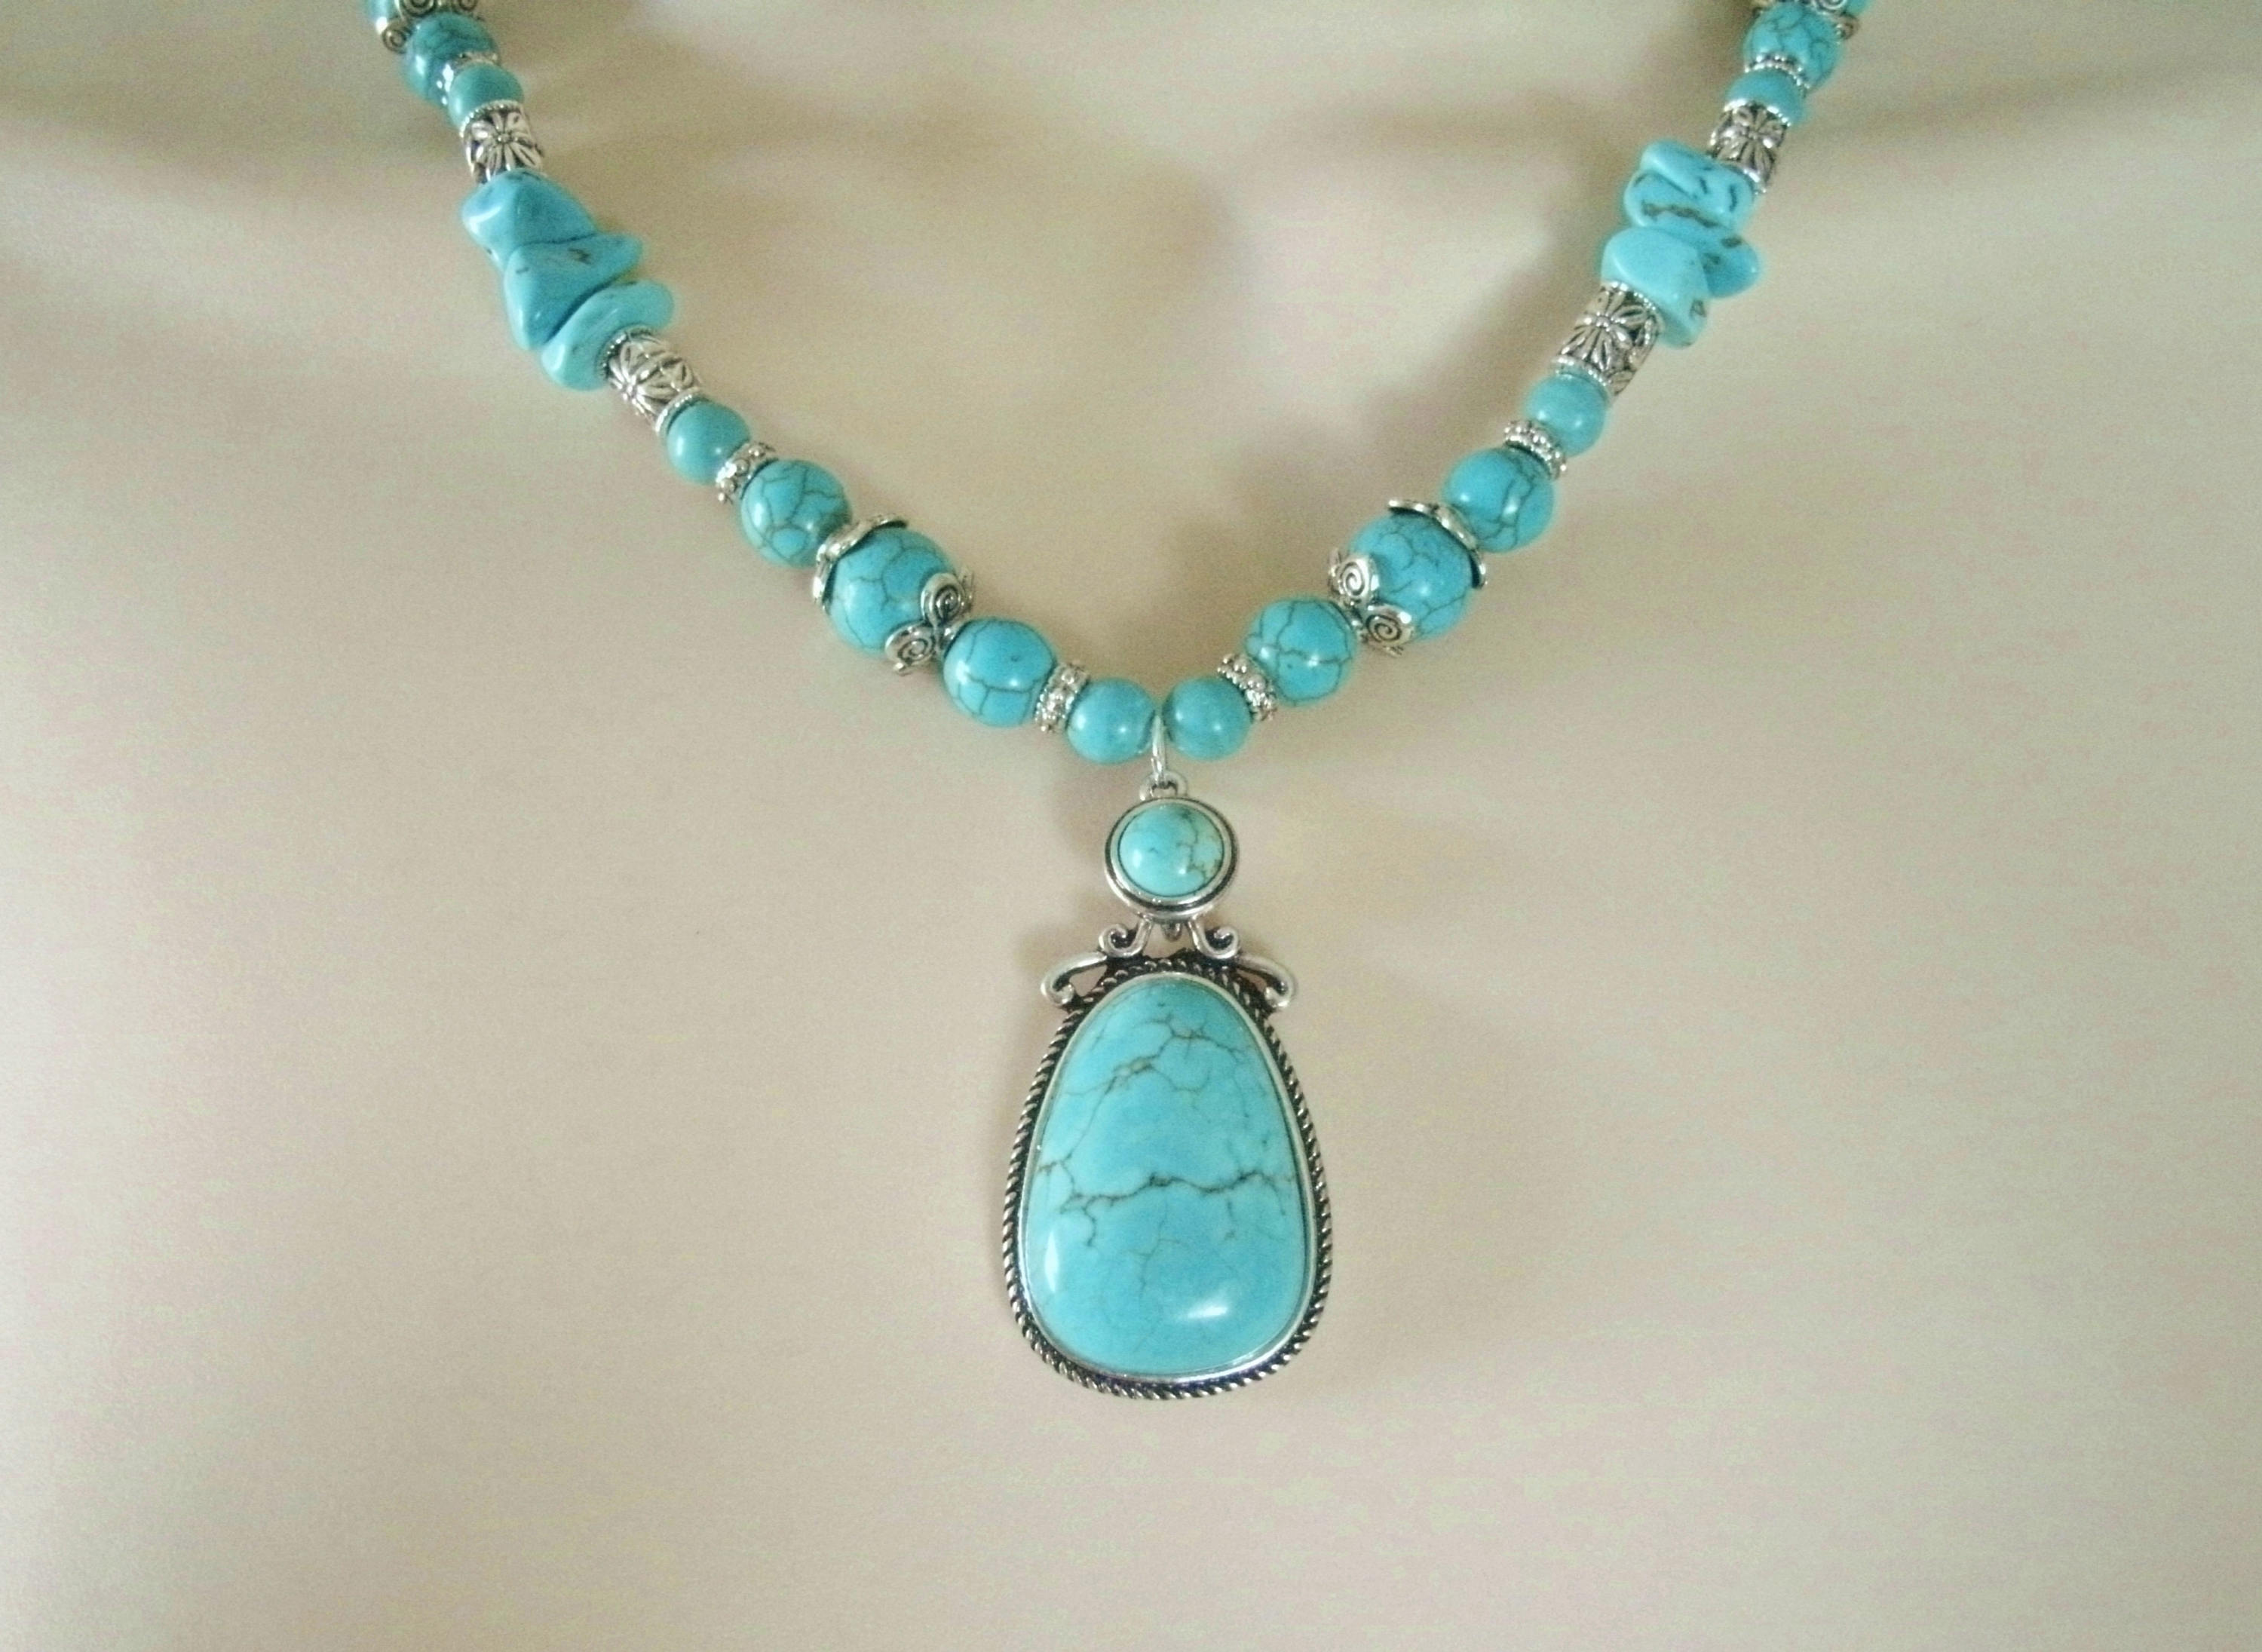 Turquoise Necklace southwestern jewelry southwest jewelry | Etsy